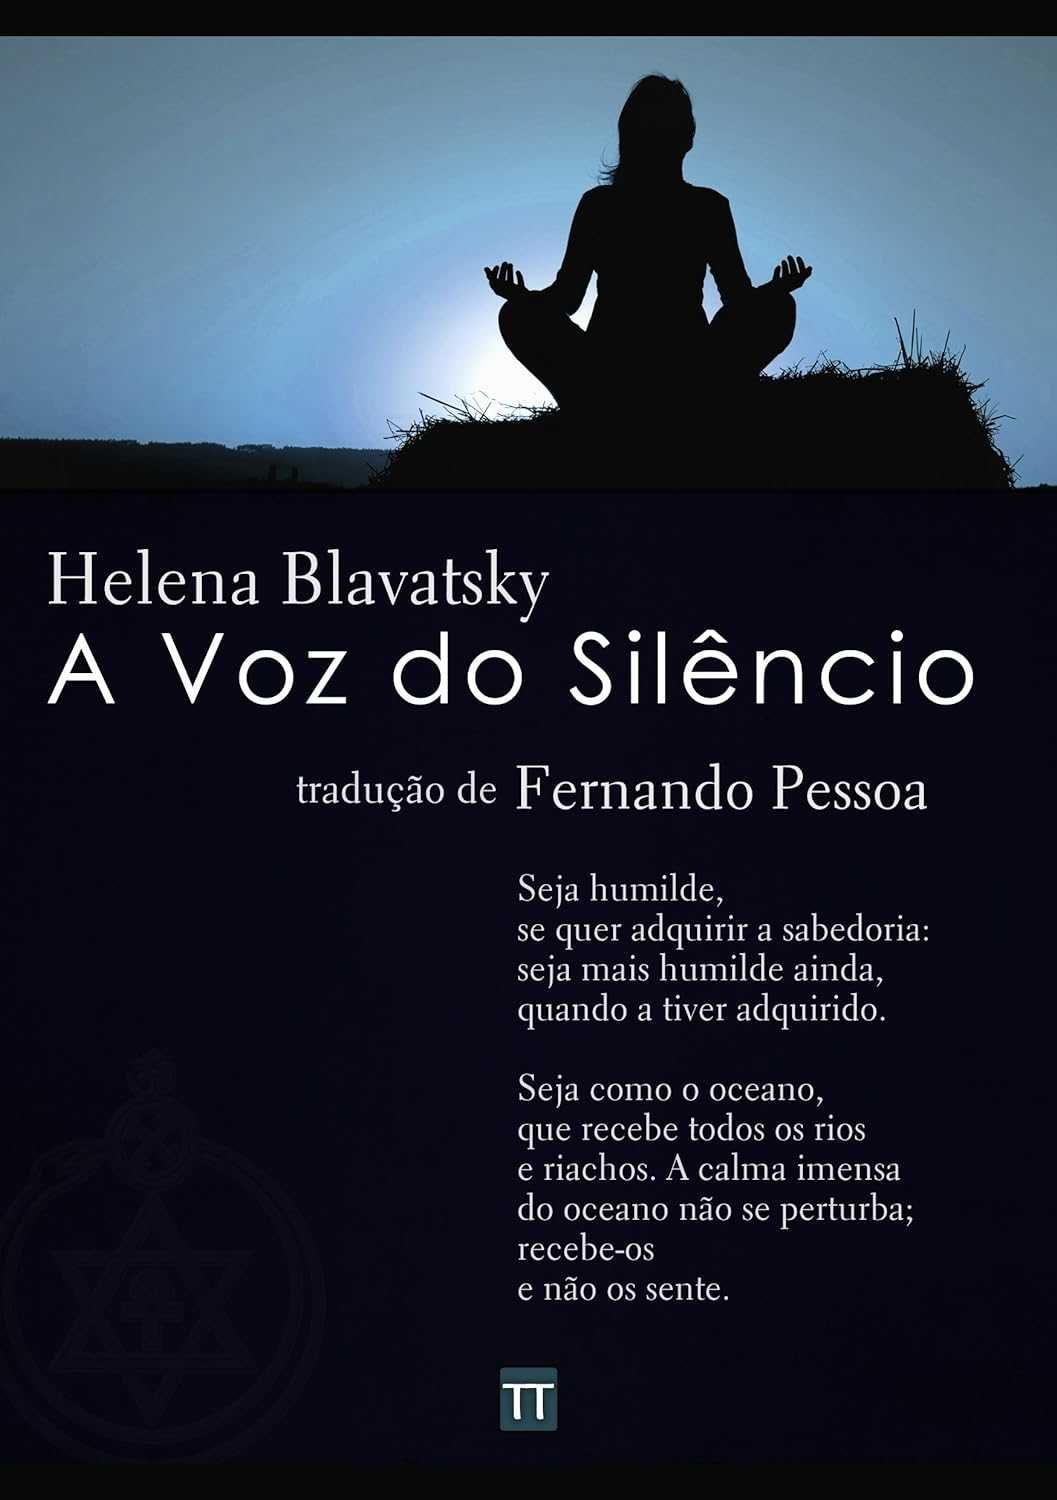 Helena Blavatsky - 19 obras da autora (livros novos)